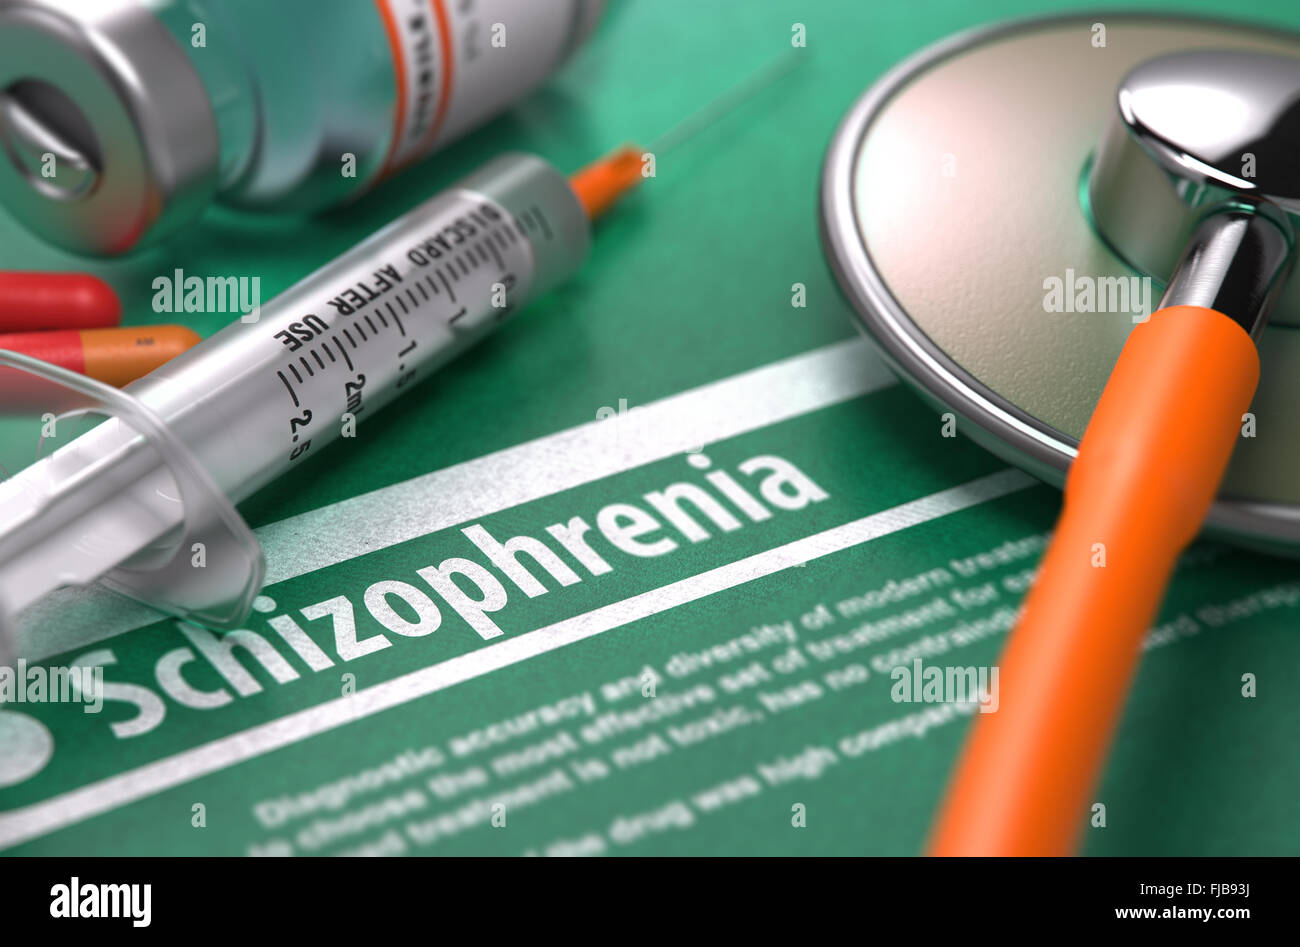 Diagnosis - Schizophrenia. Medical Concept. Stock Photo